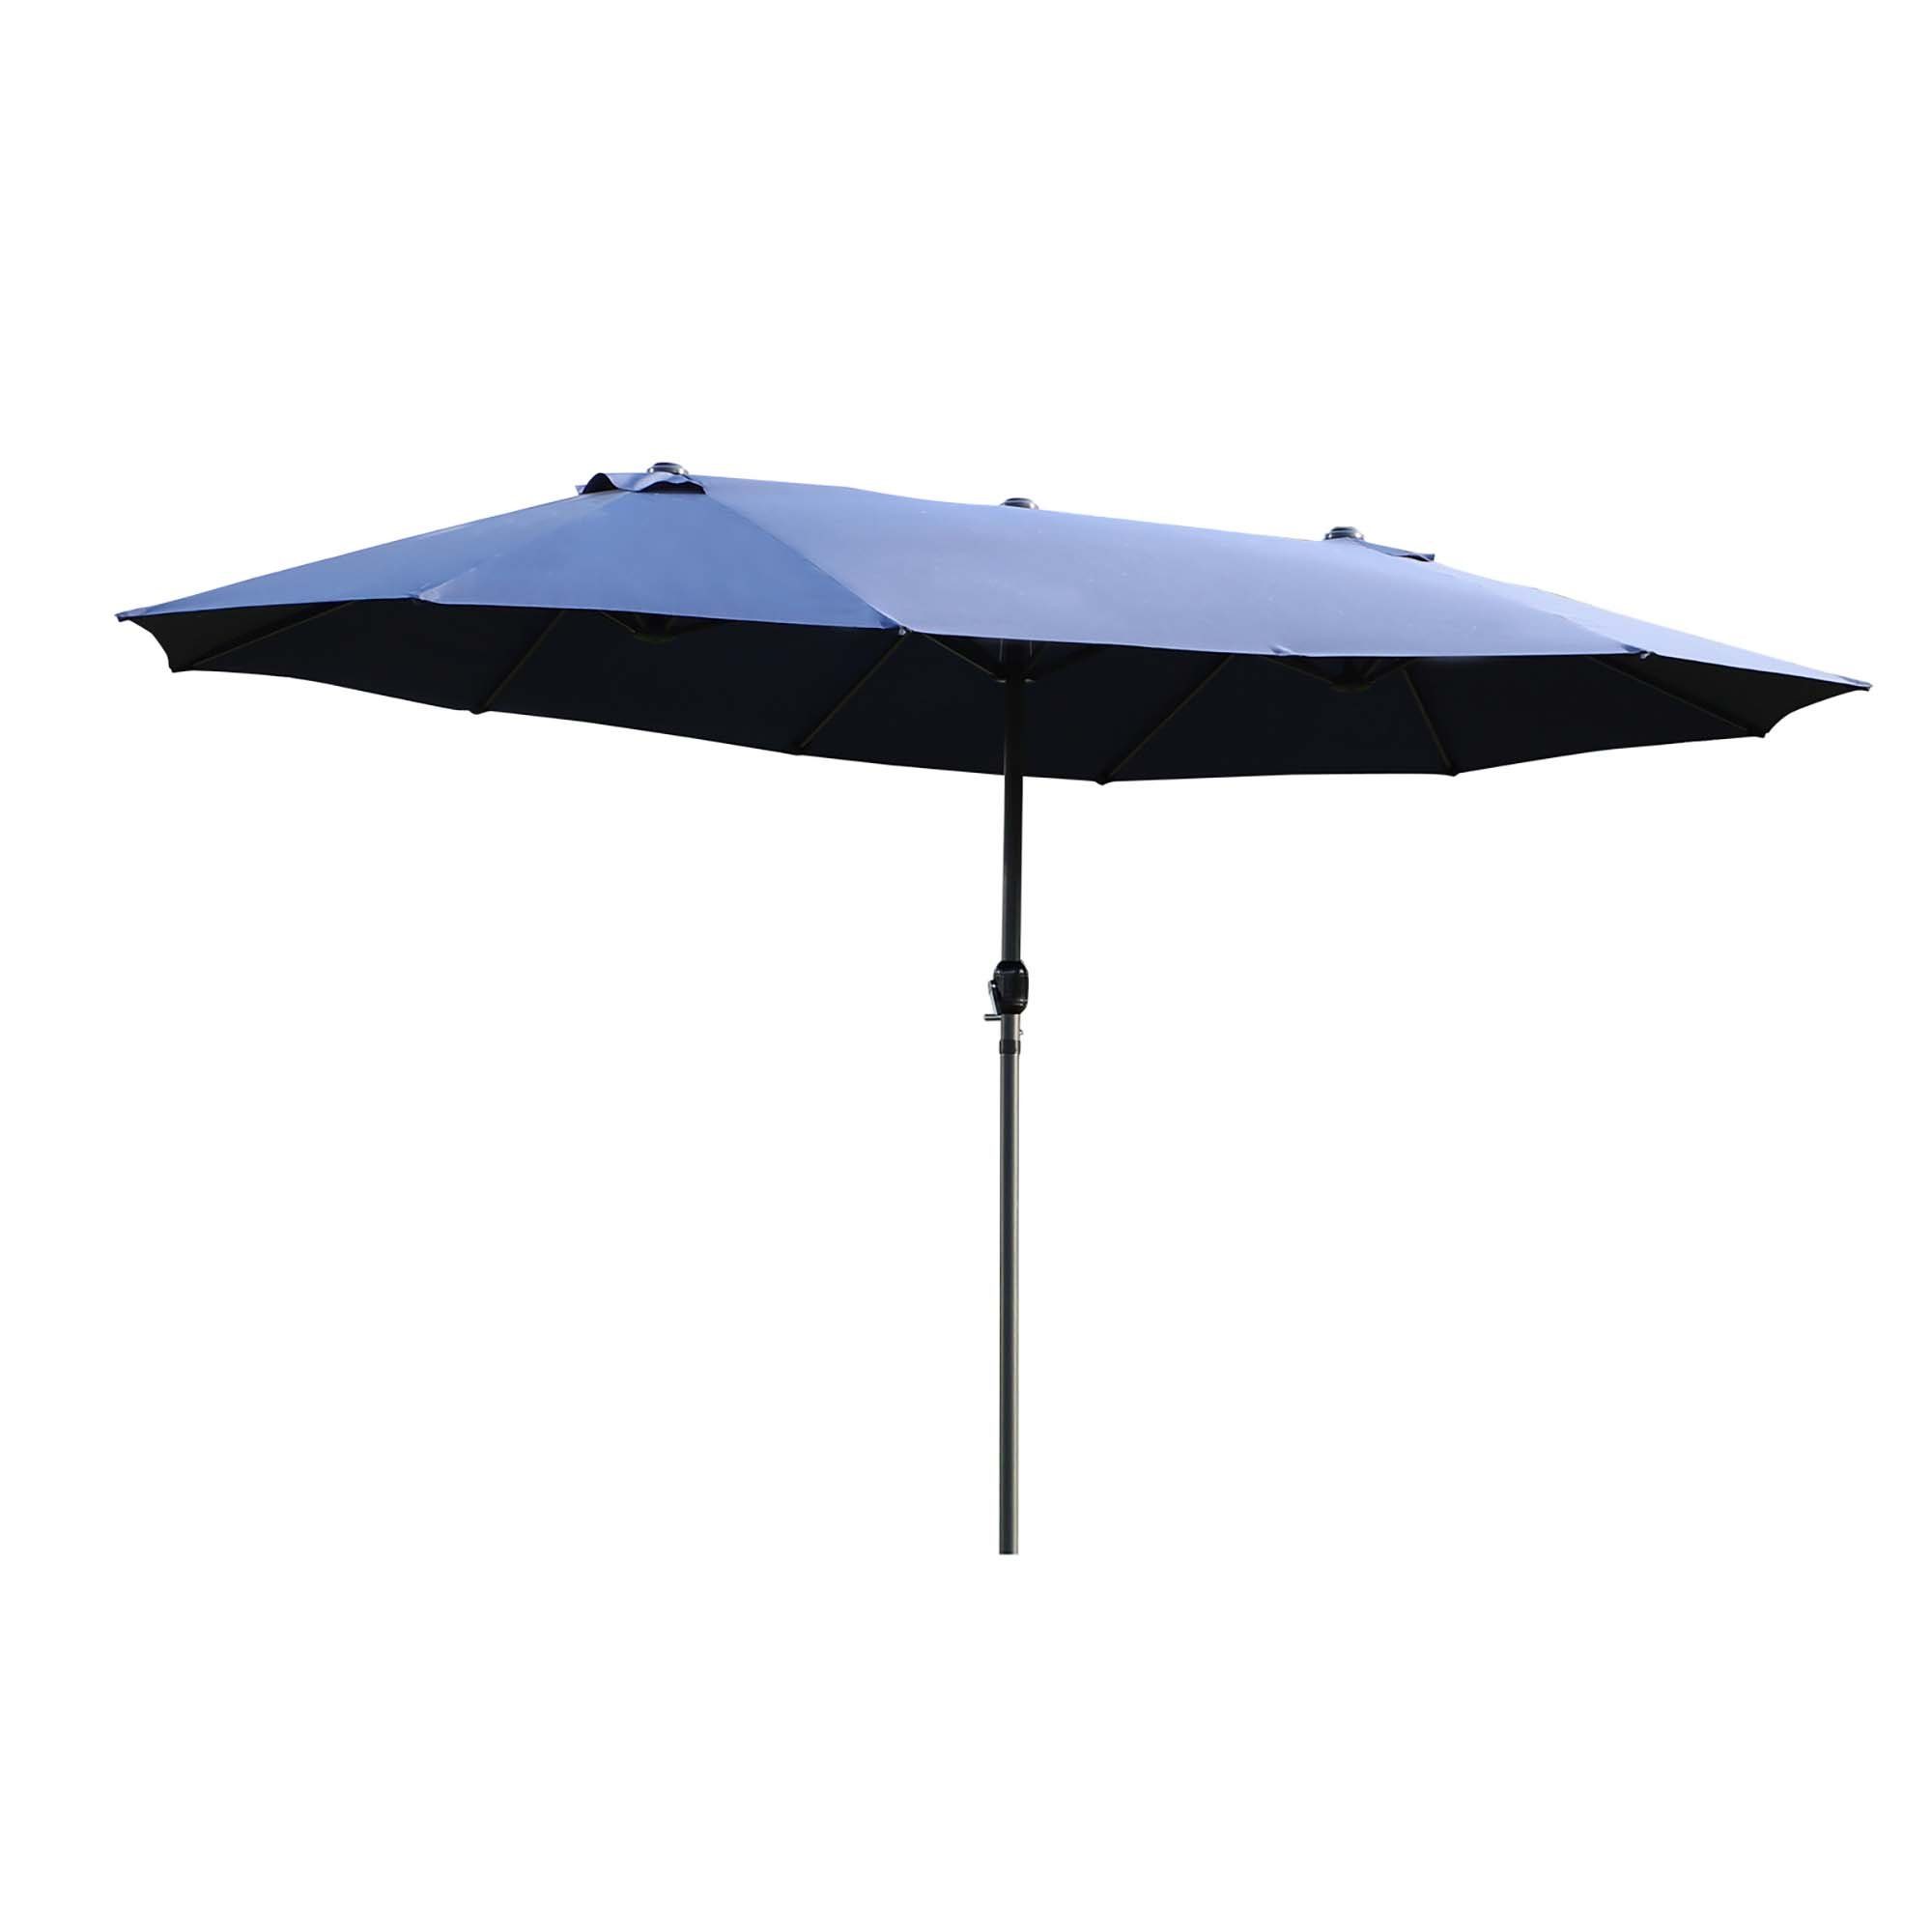 Outsunny Sonnenschirm Doppelsonnenschirm, LxB: 460x270 cm, Sonnenschirm, Gartenschirm, ohne Schirmständer